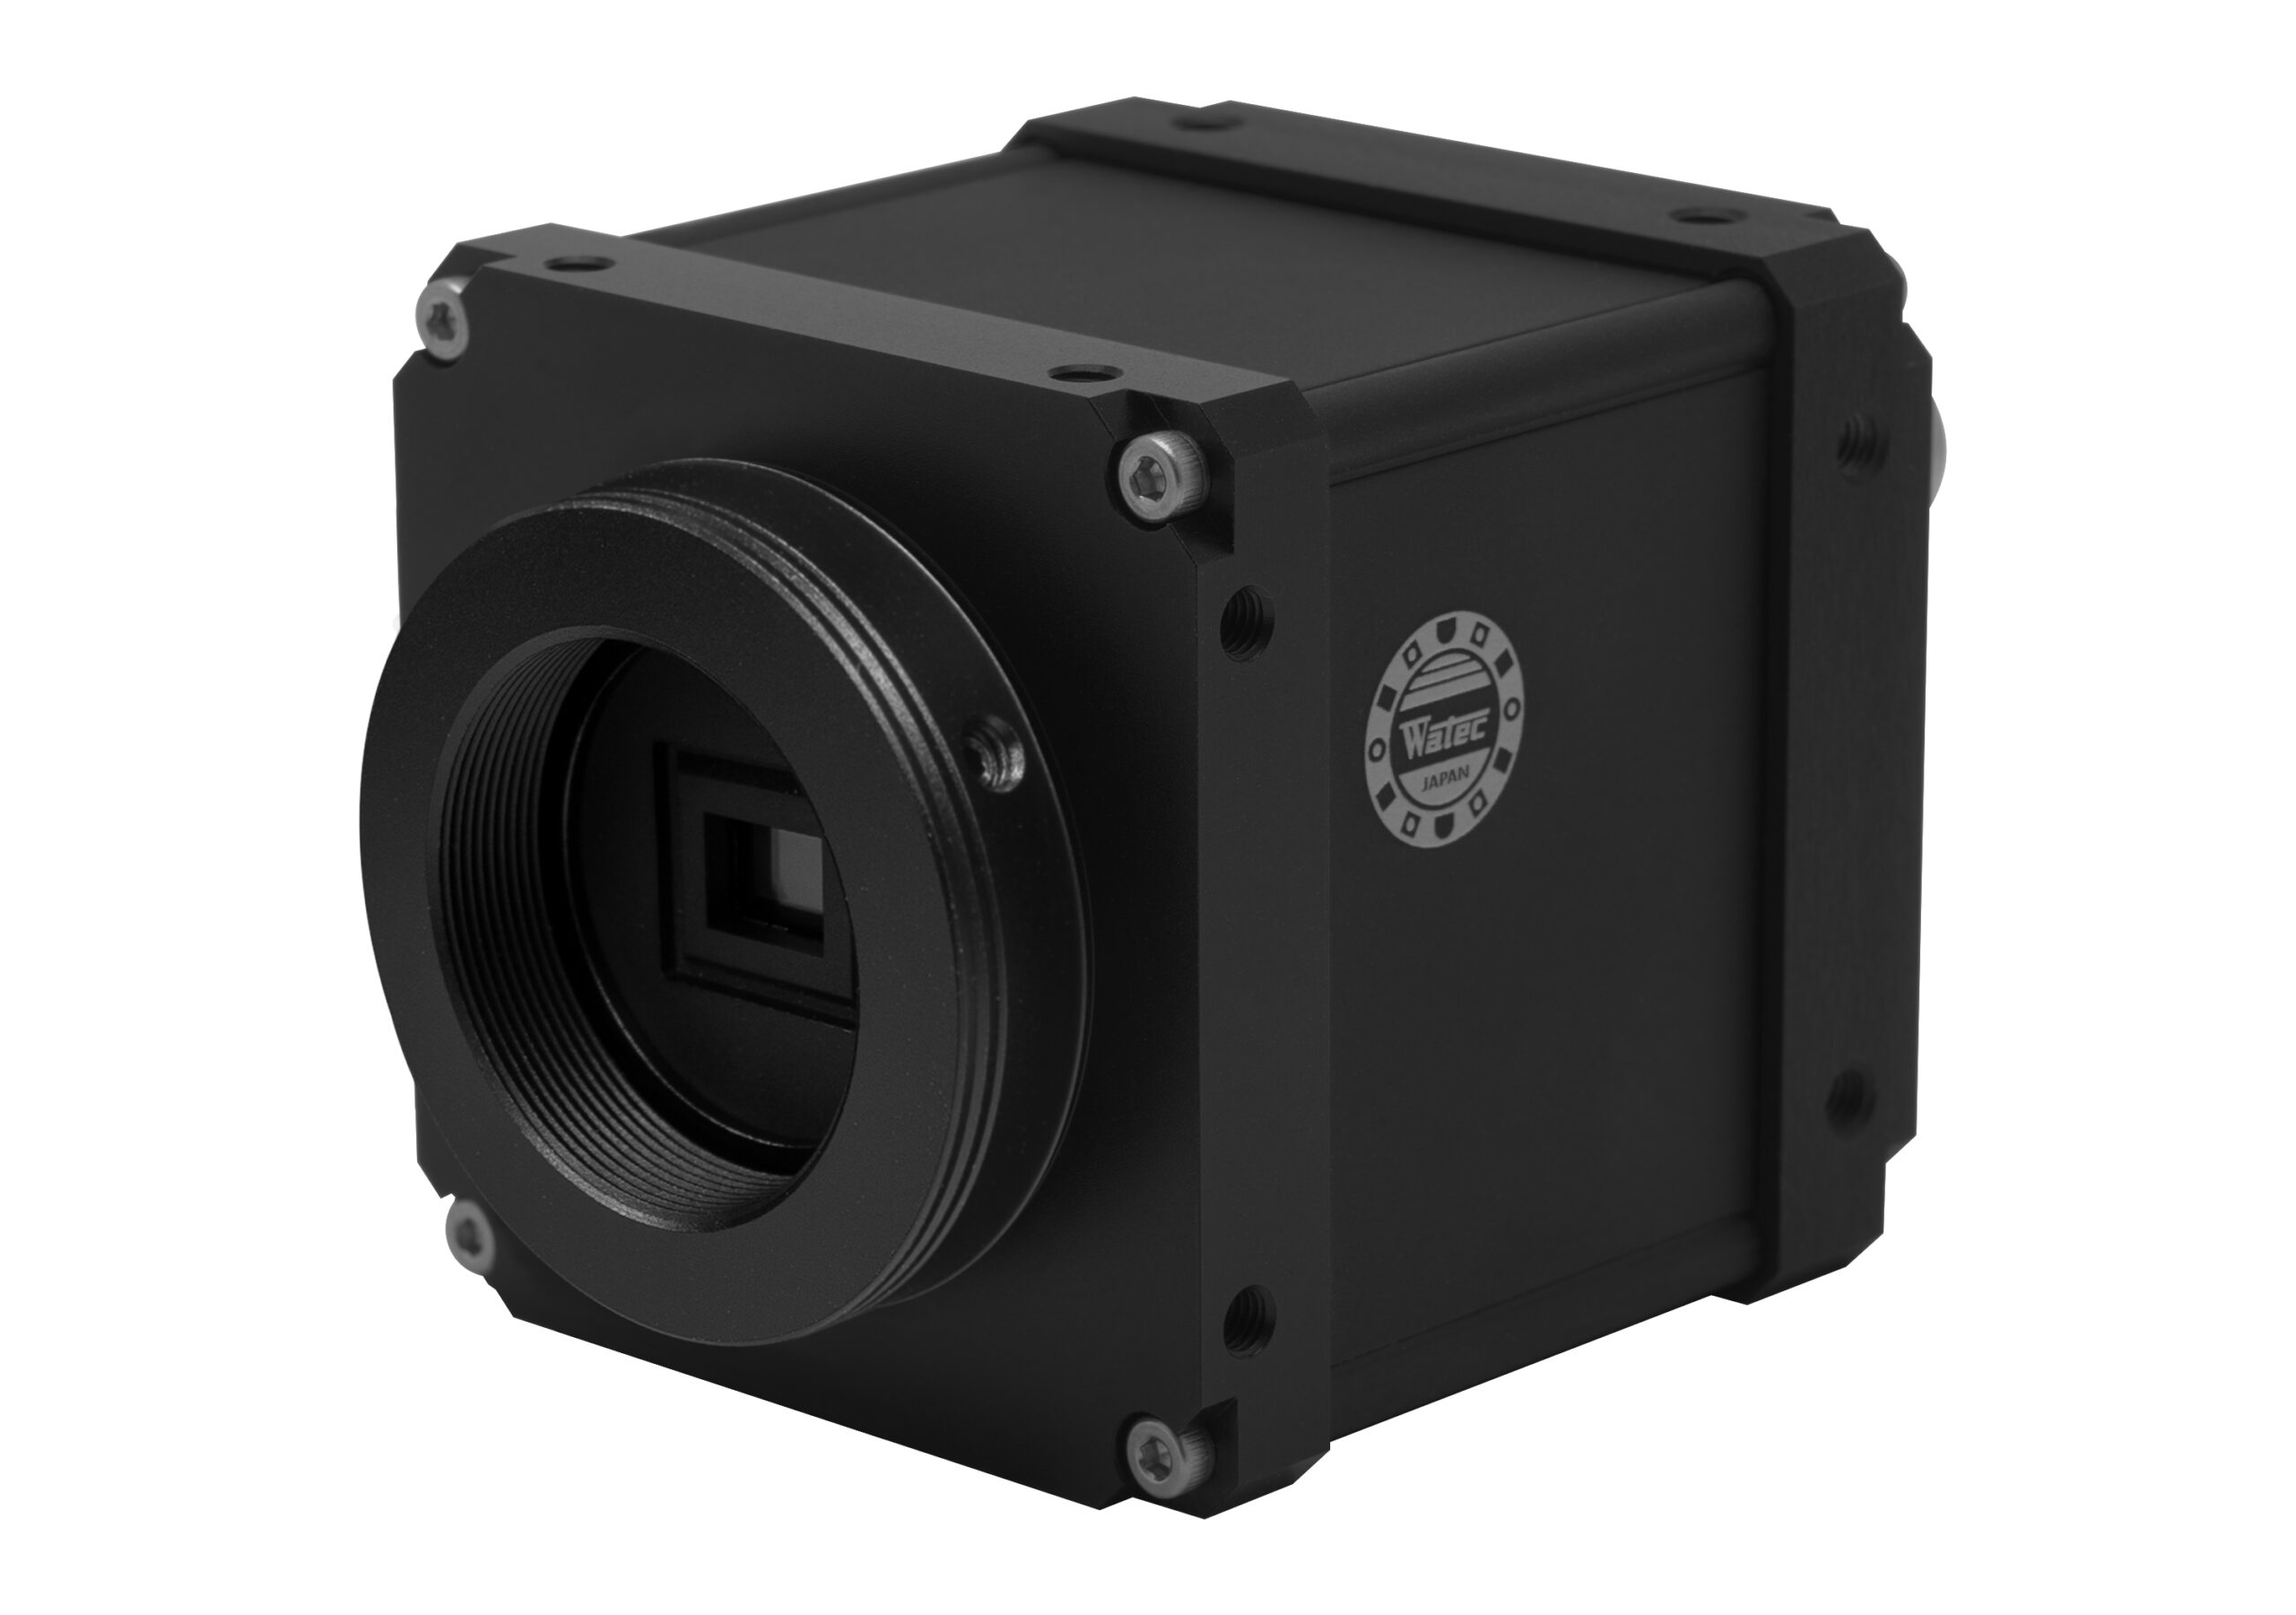 WAT-3200 Camera